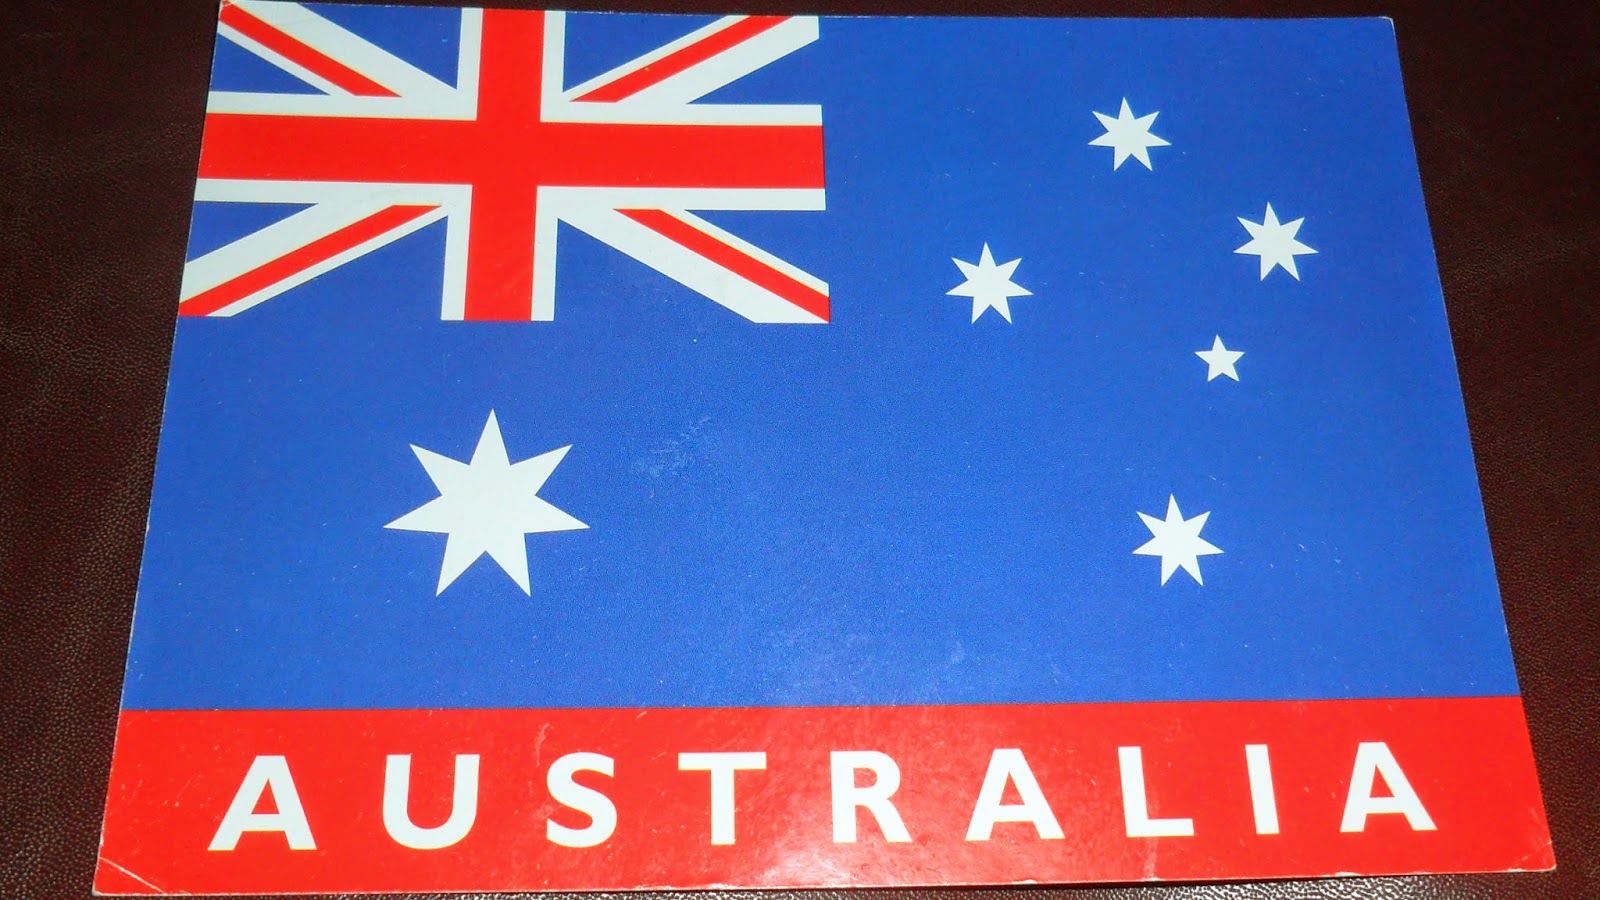 Australian National Flag Image